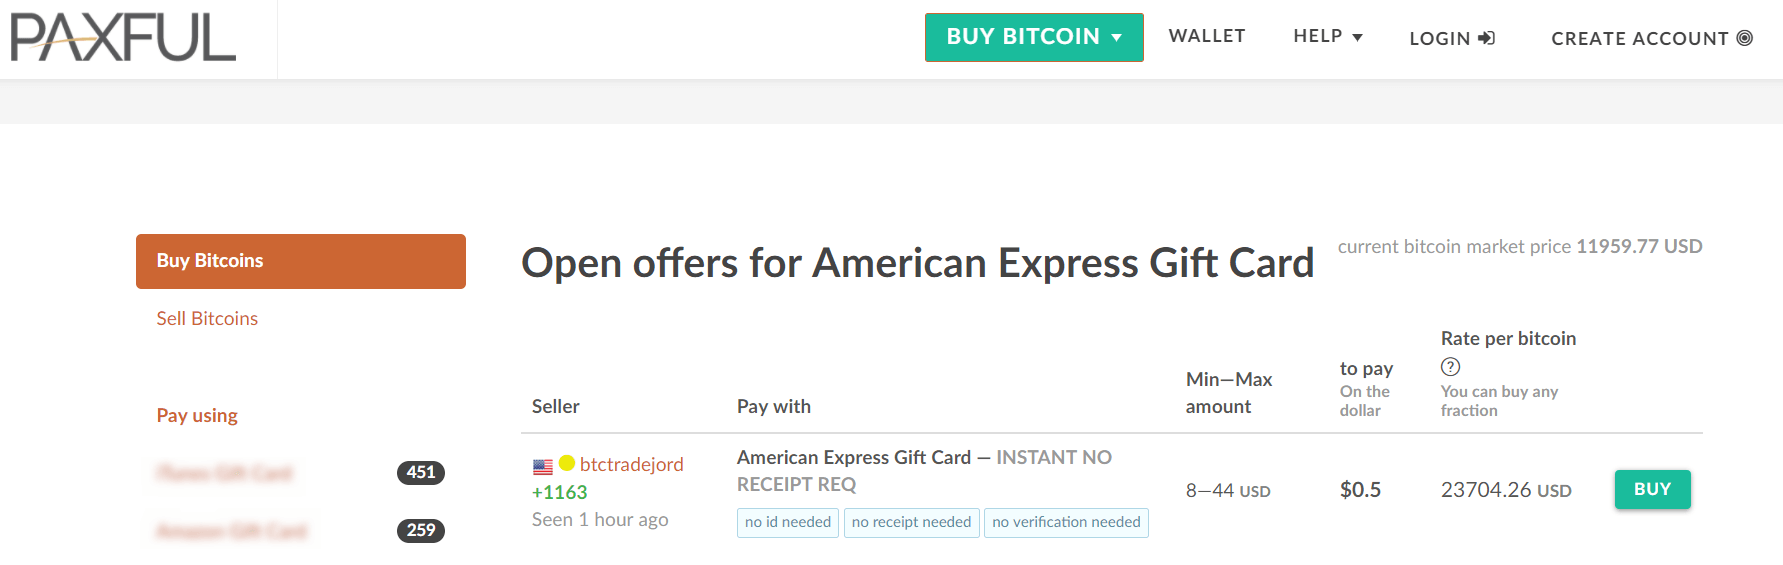 acquista bitcoin con carta regalo american express